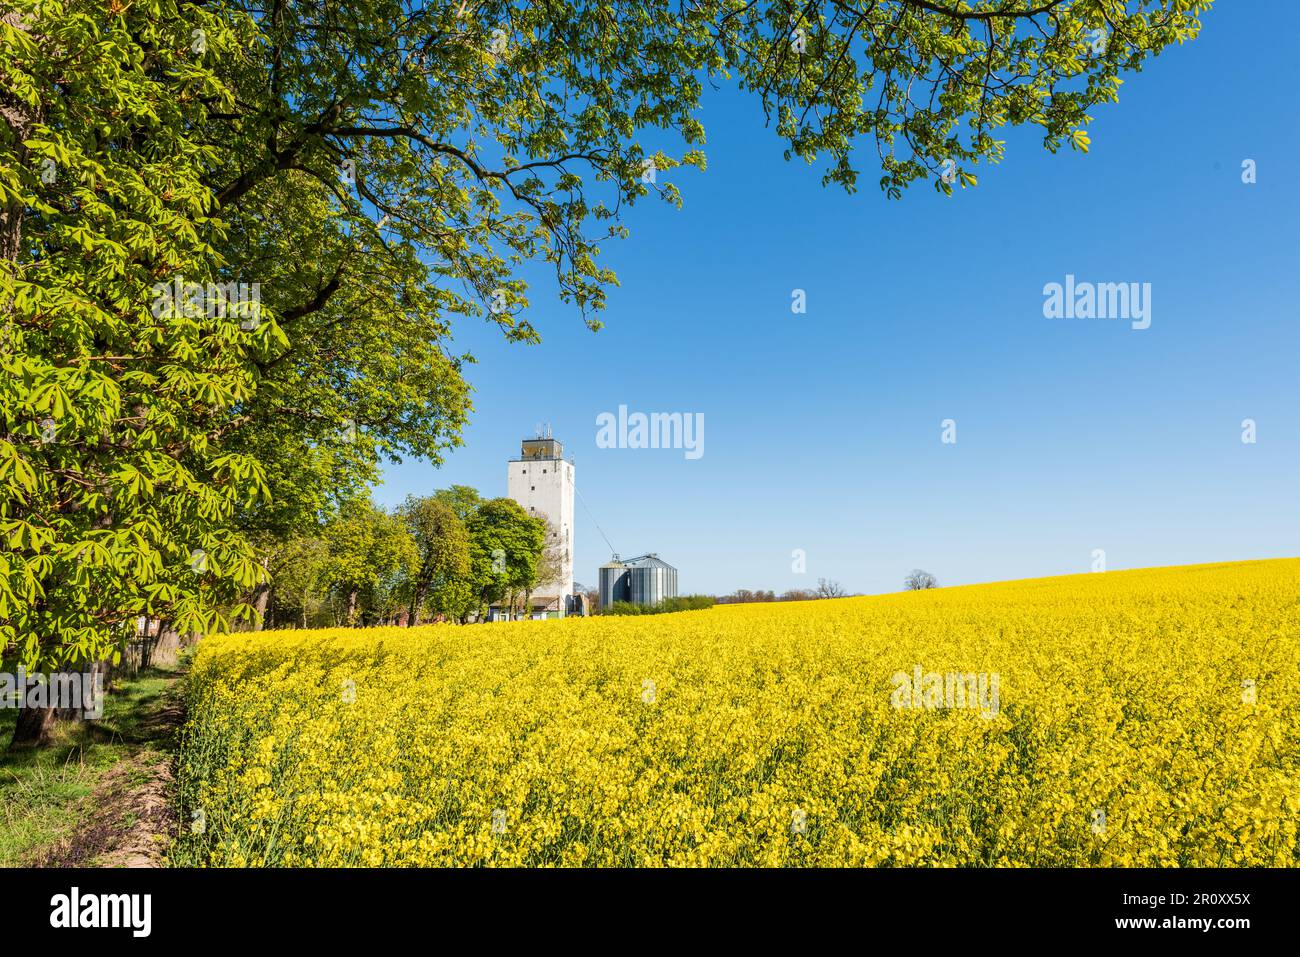 Landschaft Kastanien an einem gelben Rapsfeld, im Hintergrund der Bauernhof mit Silo Stockfoto